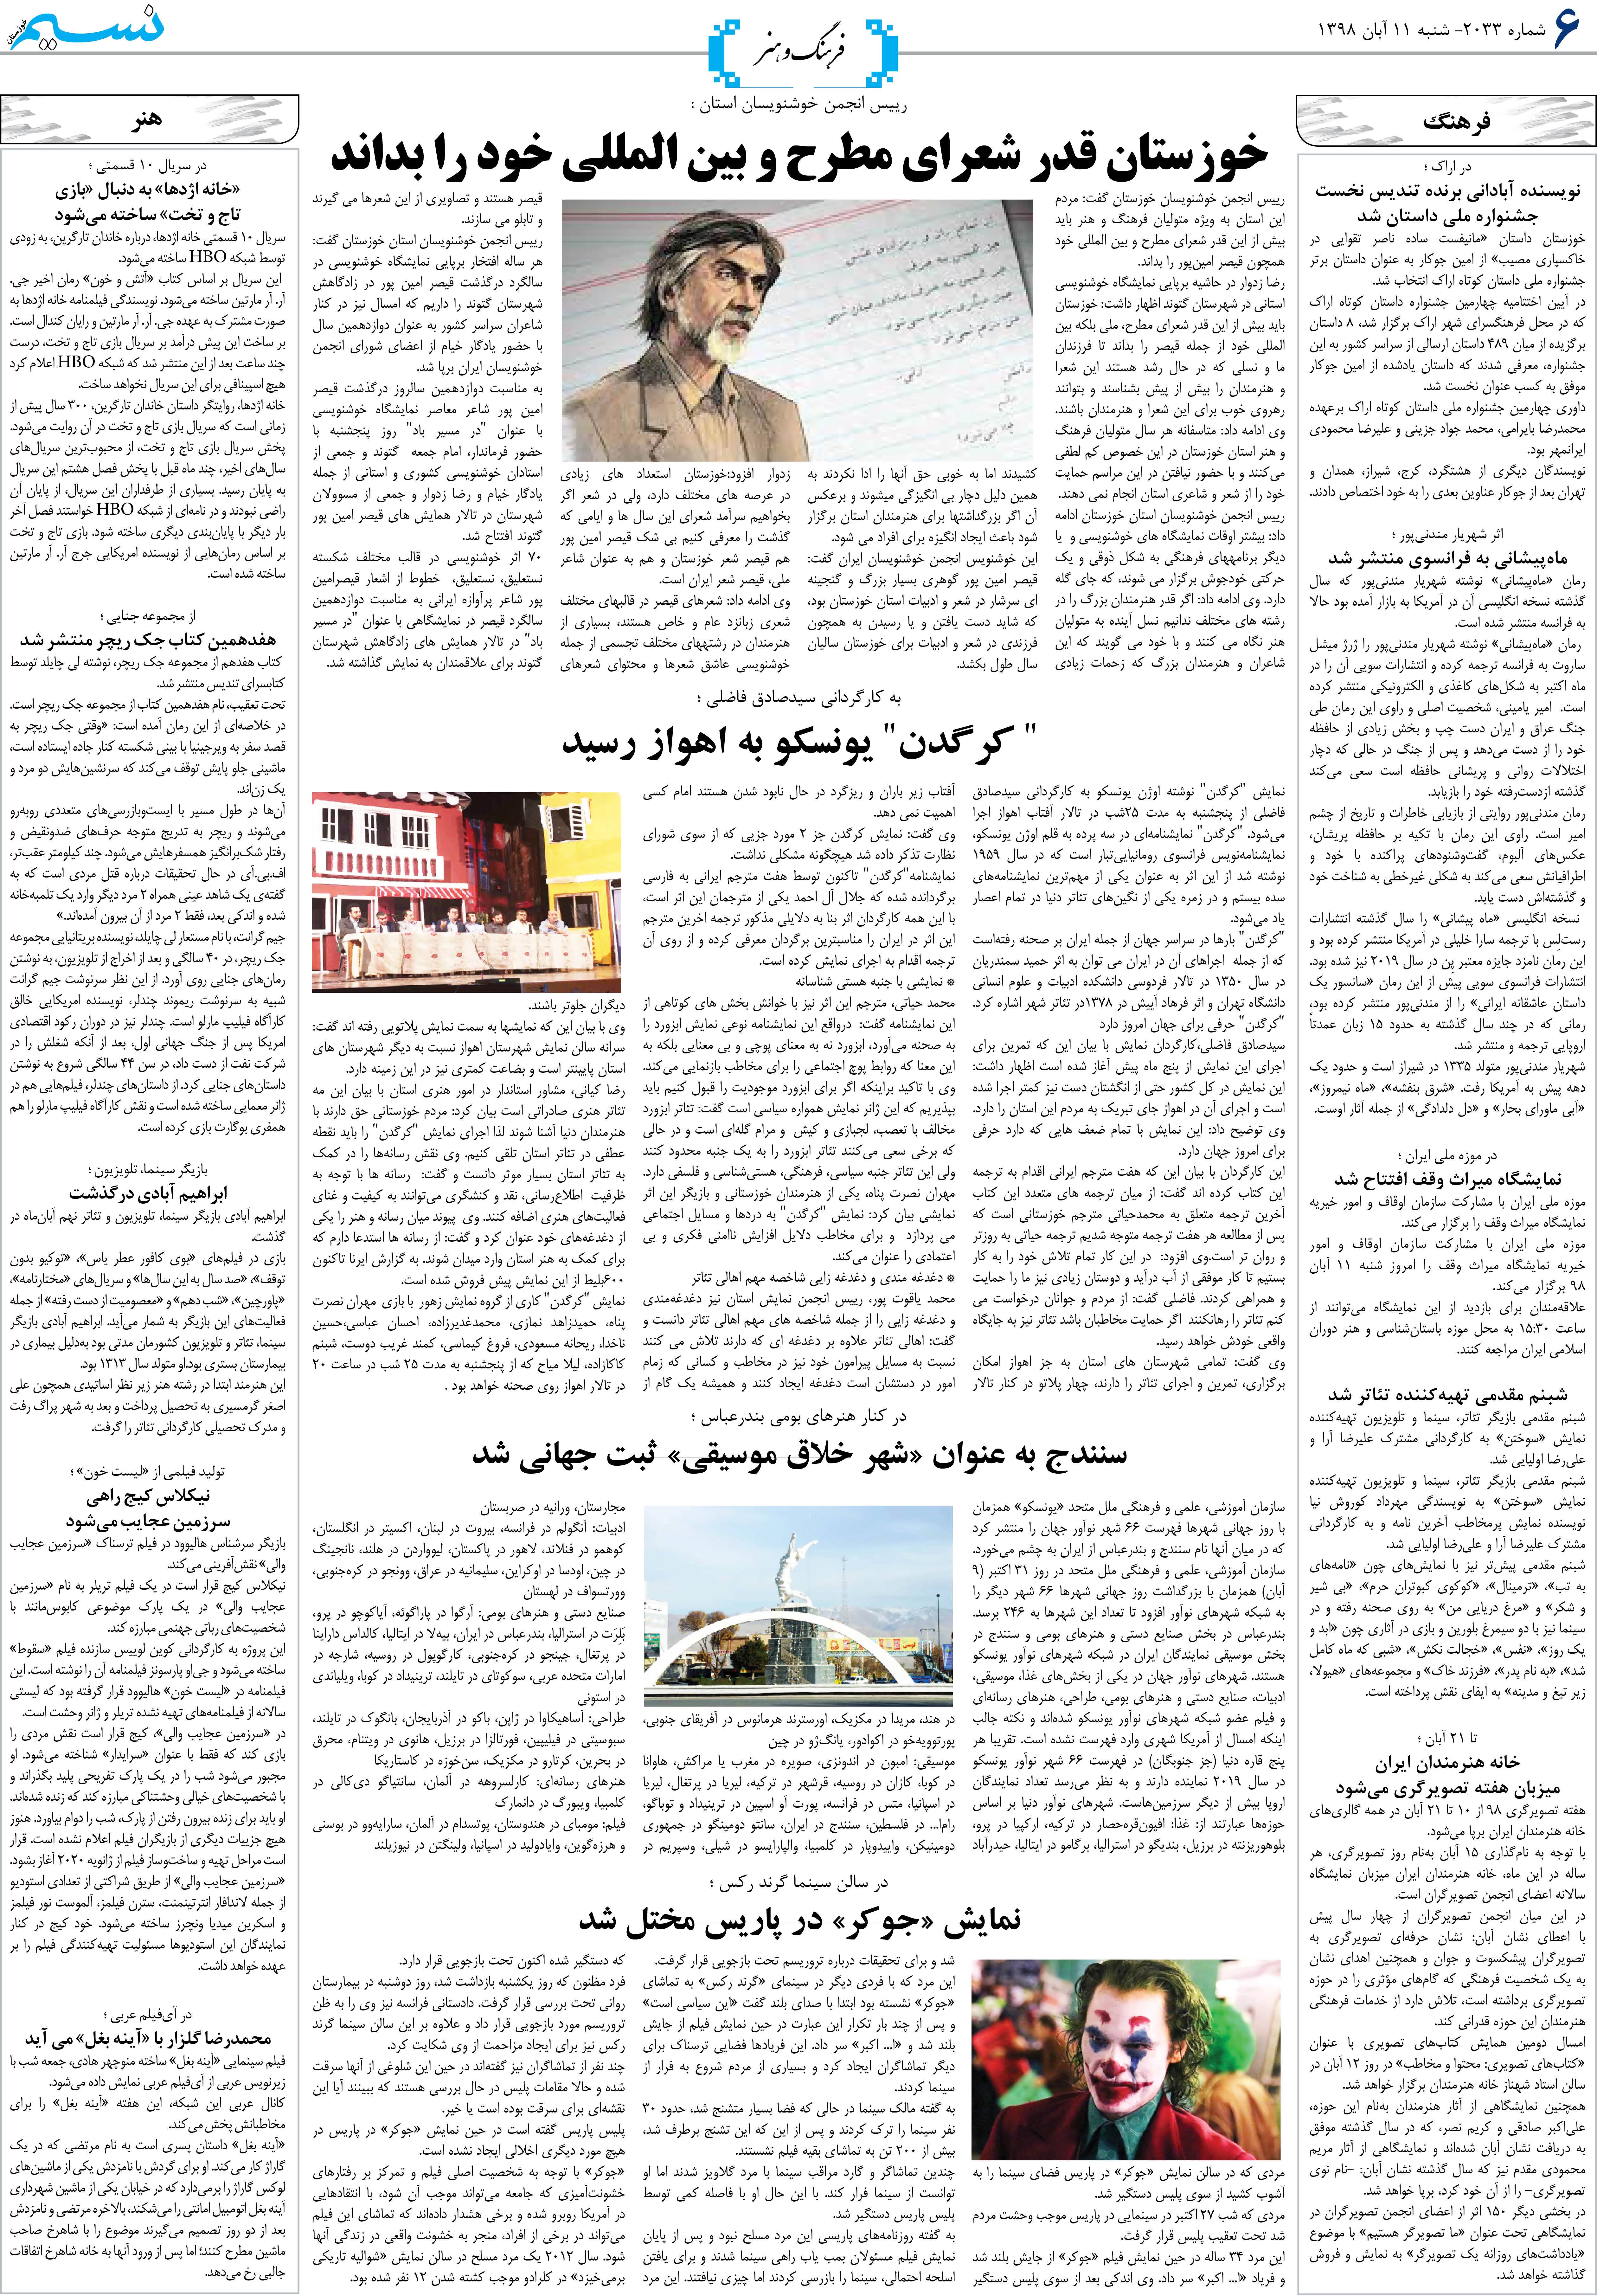 صفحه فرهنگ و هنر روزنامه نسیم شماره 2033